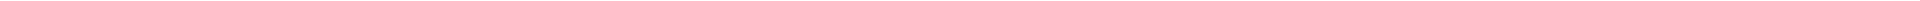 Элайнеры - цены на капы для выравнивания (исправления) прикуса, цены в Астане, Алматы, Атырау, Усть-Каменогорск, Уральск, Кокшетау в Казахстане, фото 17